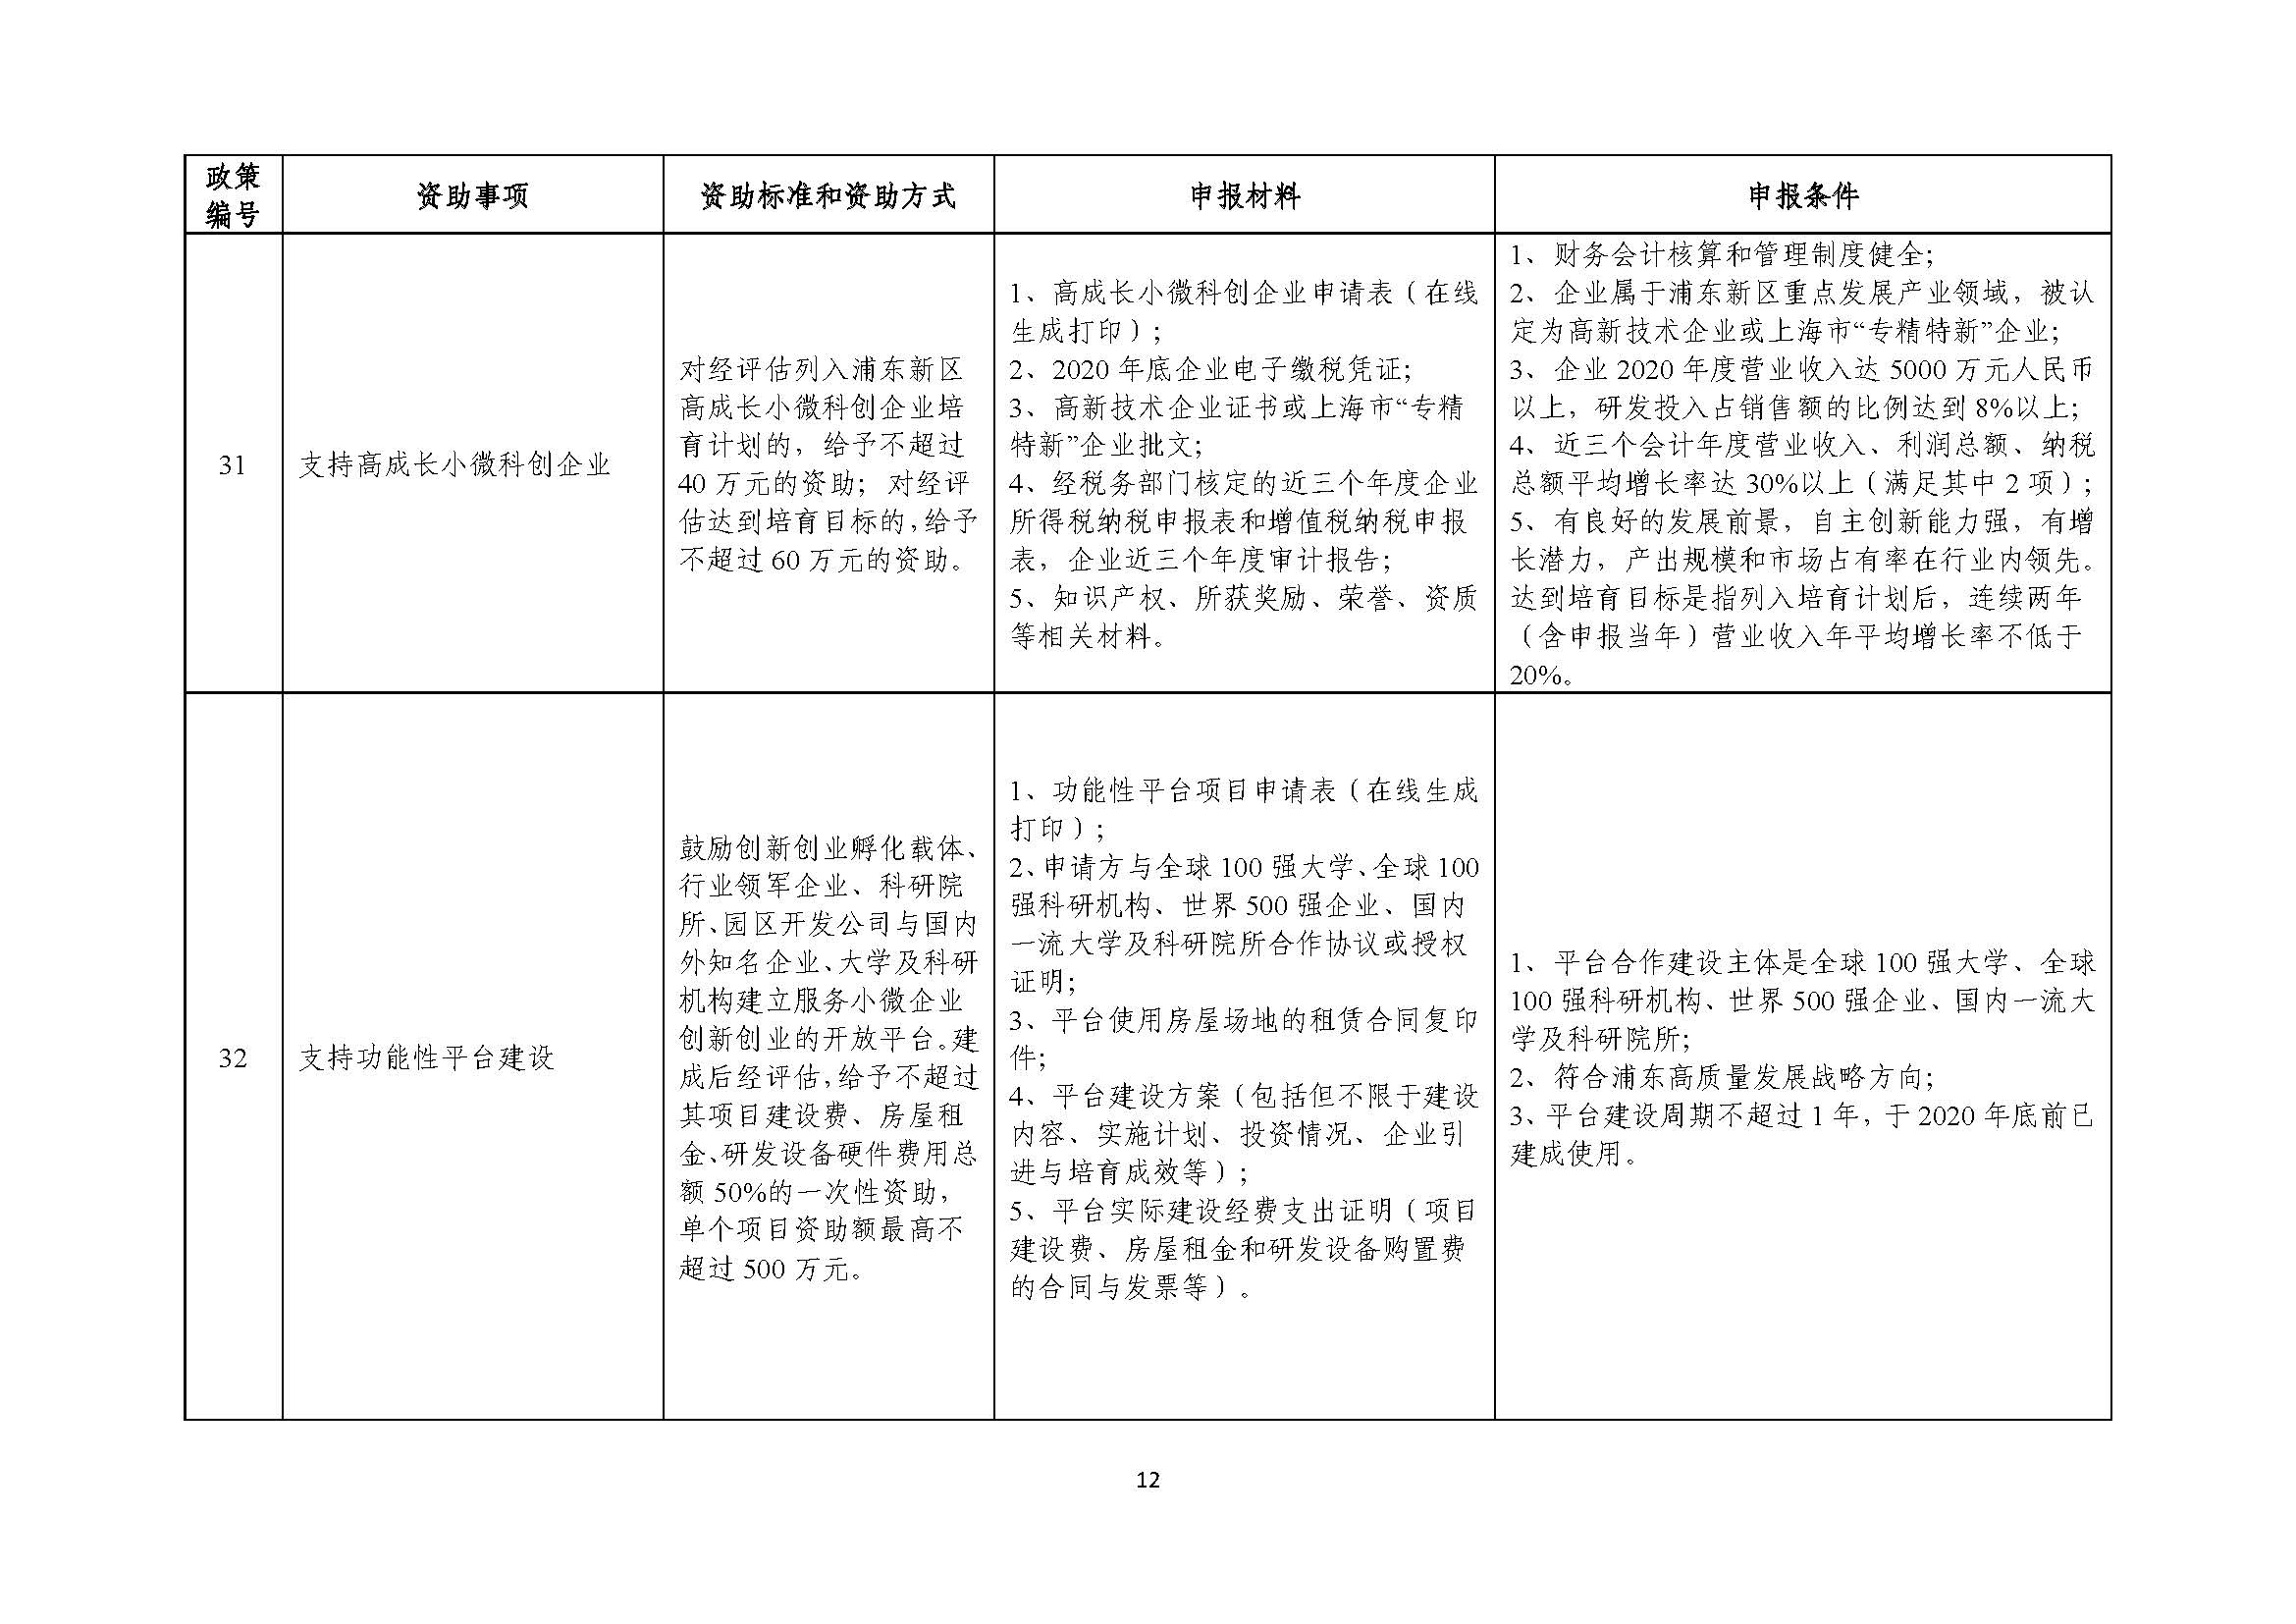 2021年张江科学城专项政策申报指南_页面_12.jpg